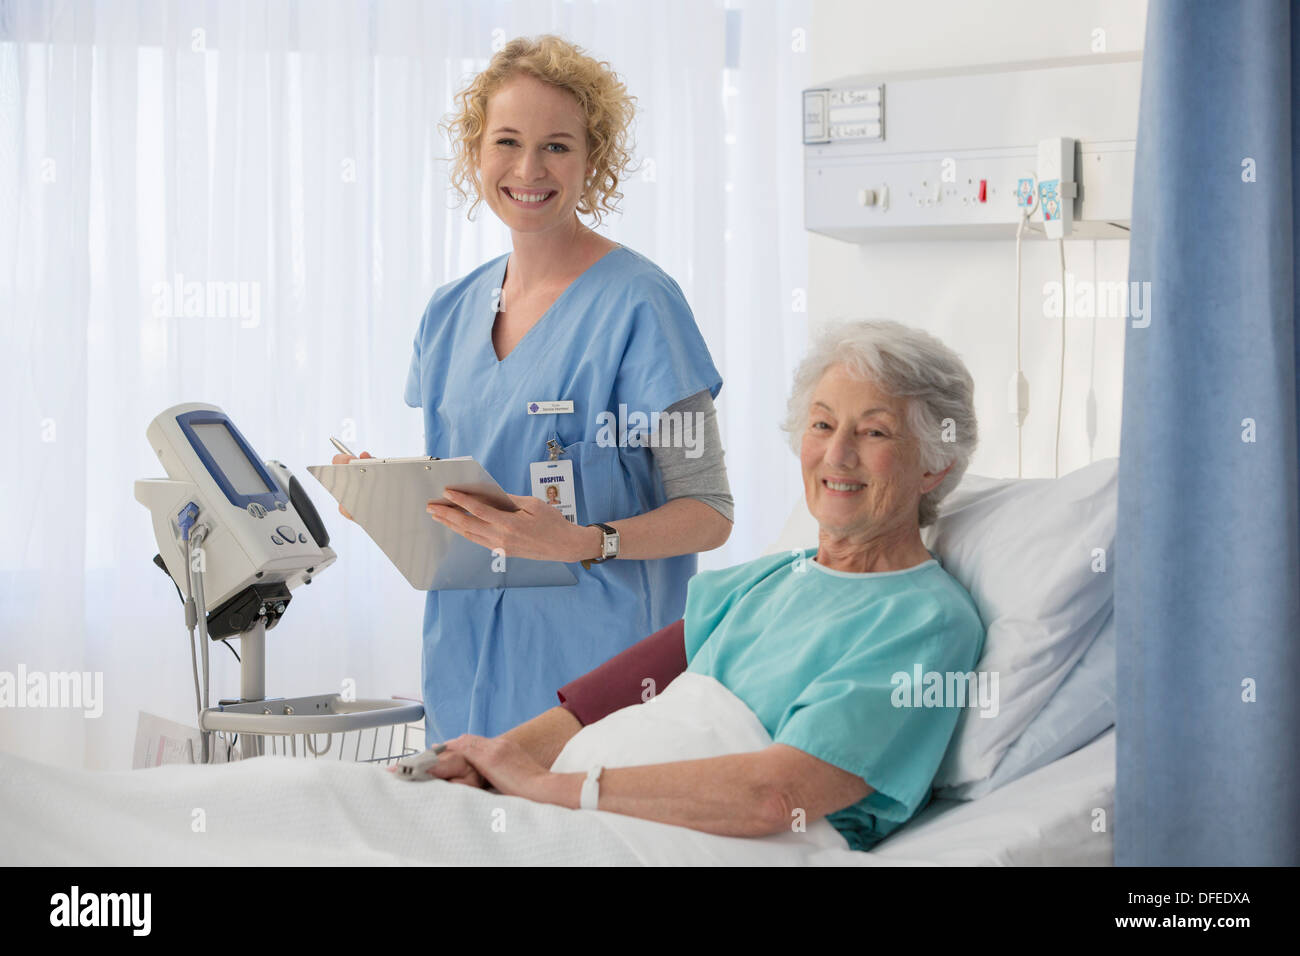 Porträt des Lächelns Krankenschwester und ältere Patienten im Krankenzimmer Stockfoto